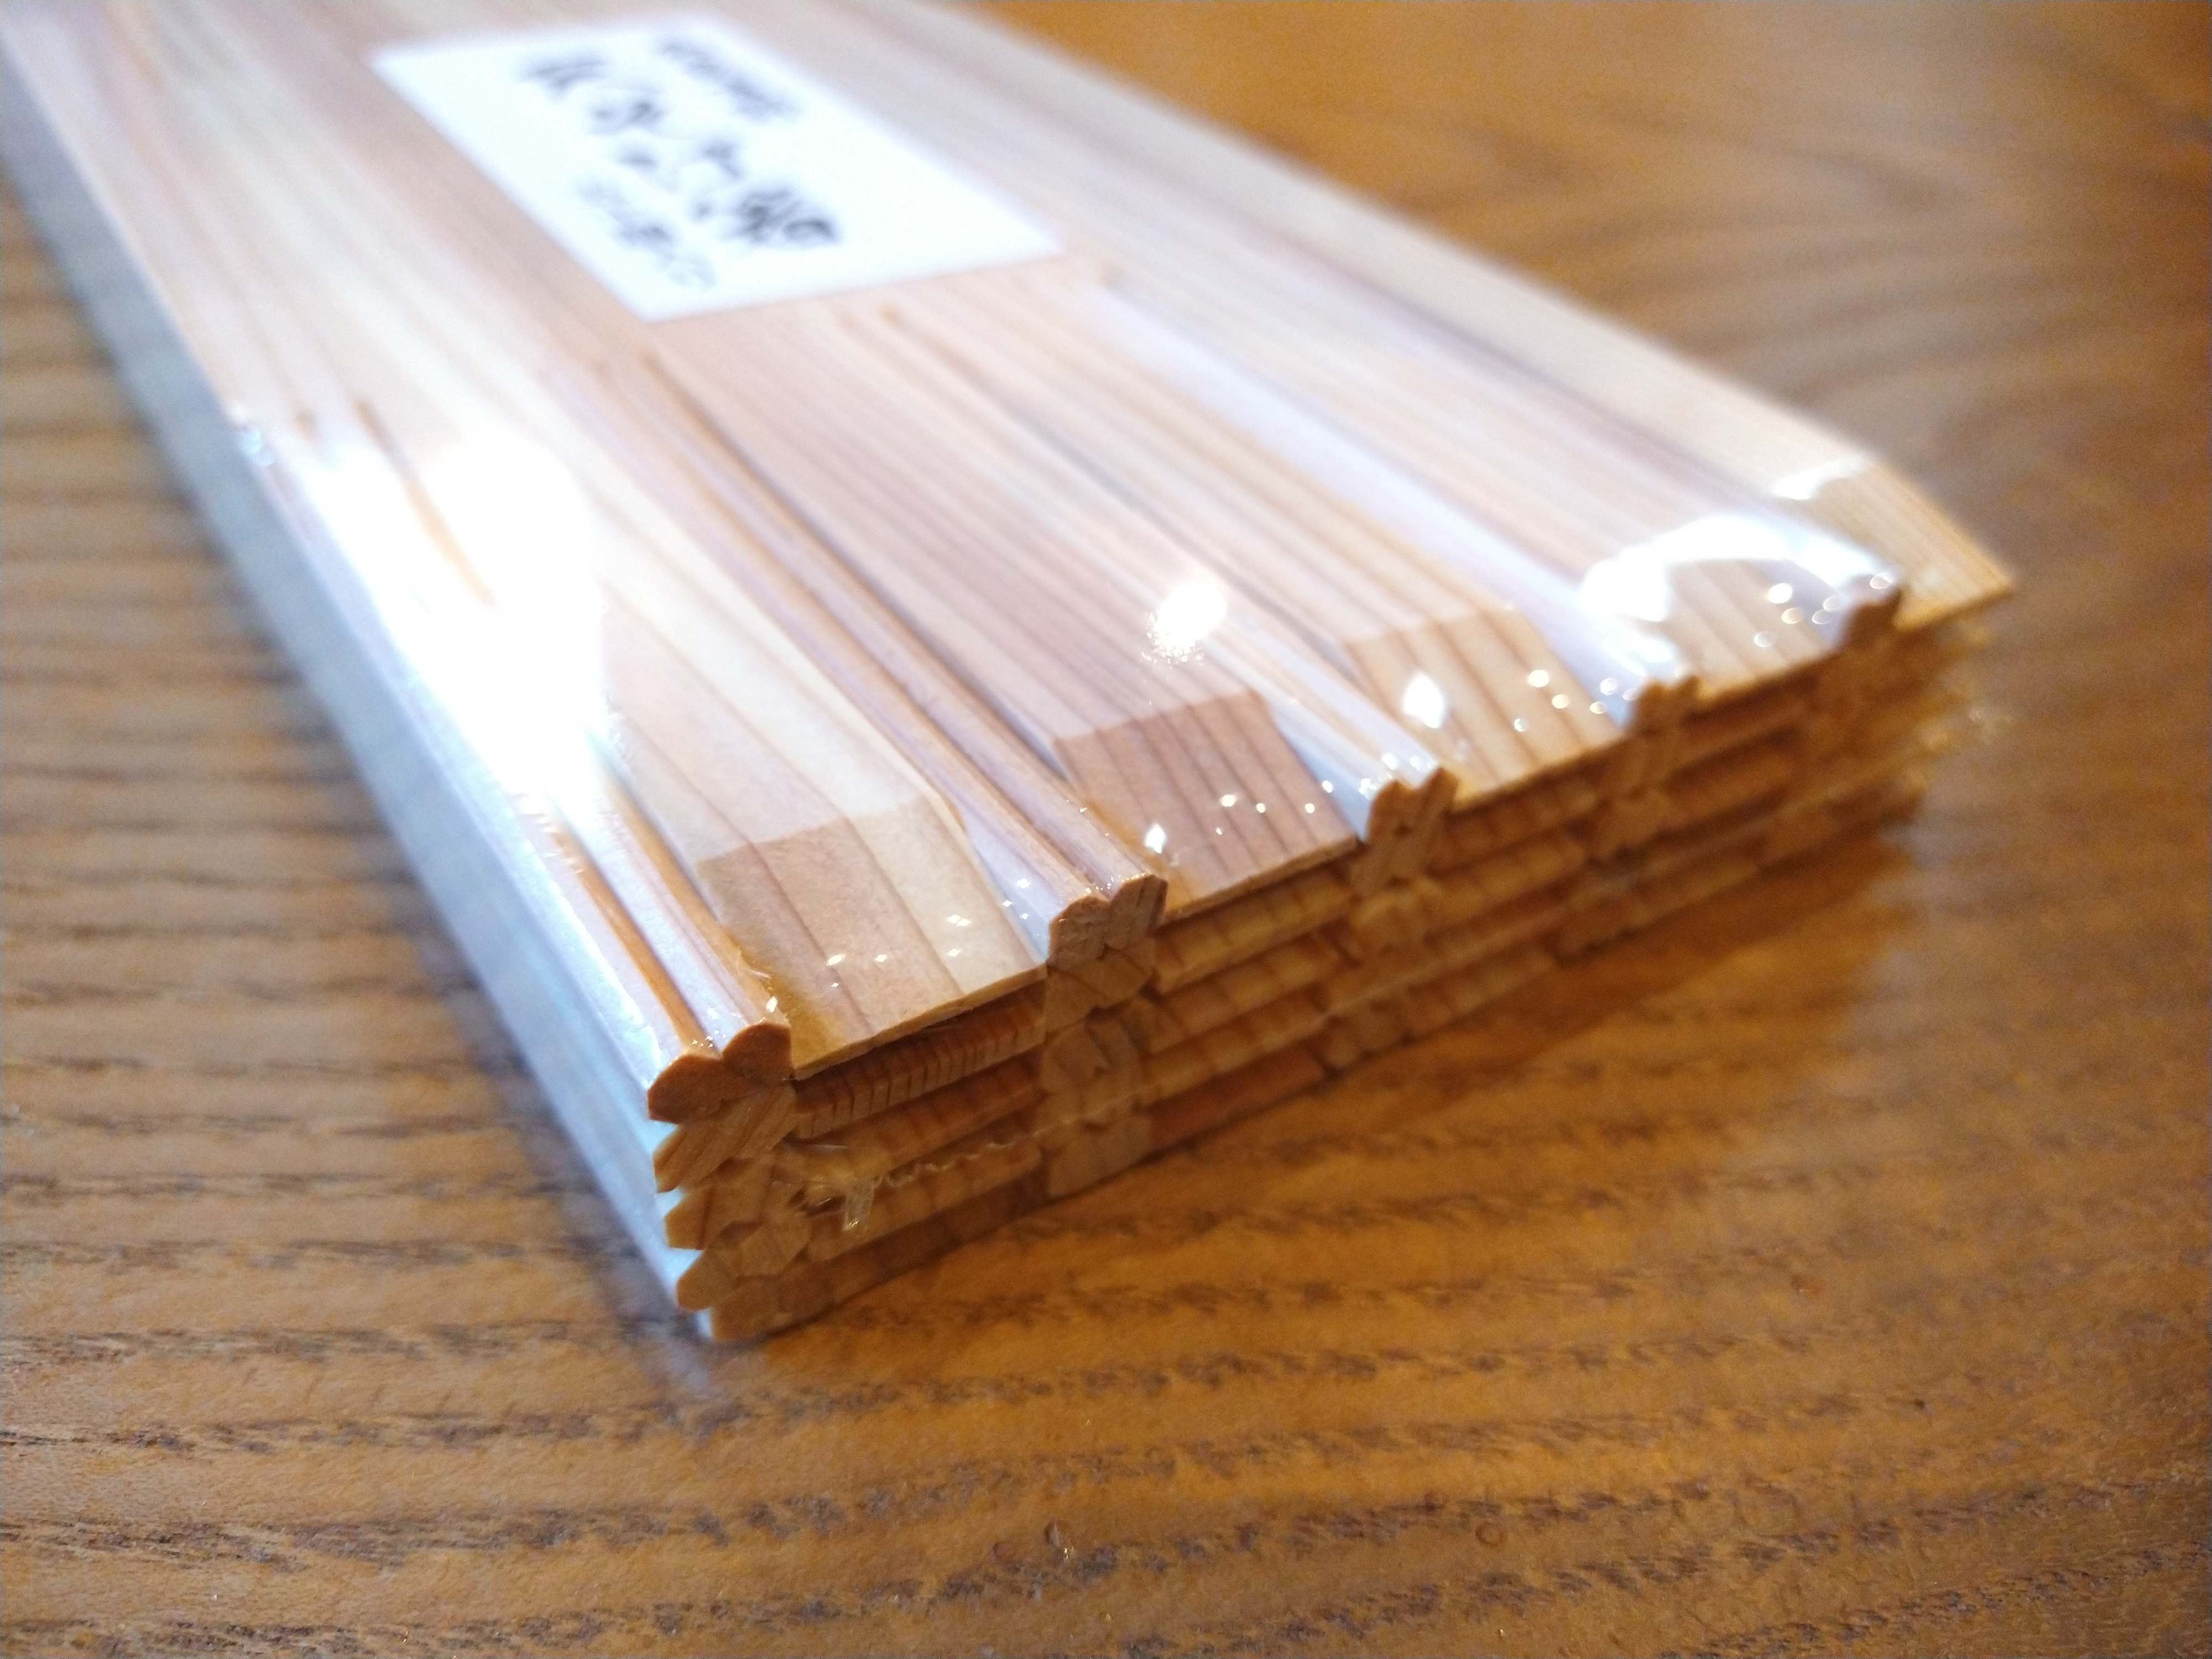 ツボイ 割箸 杉柾天削 24cm (1ケース5000膳入)